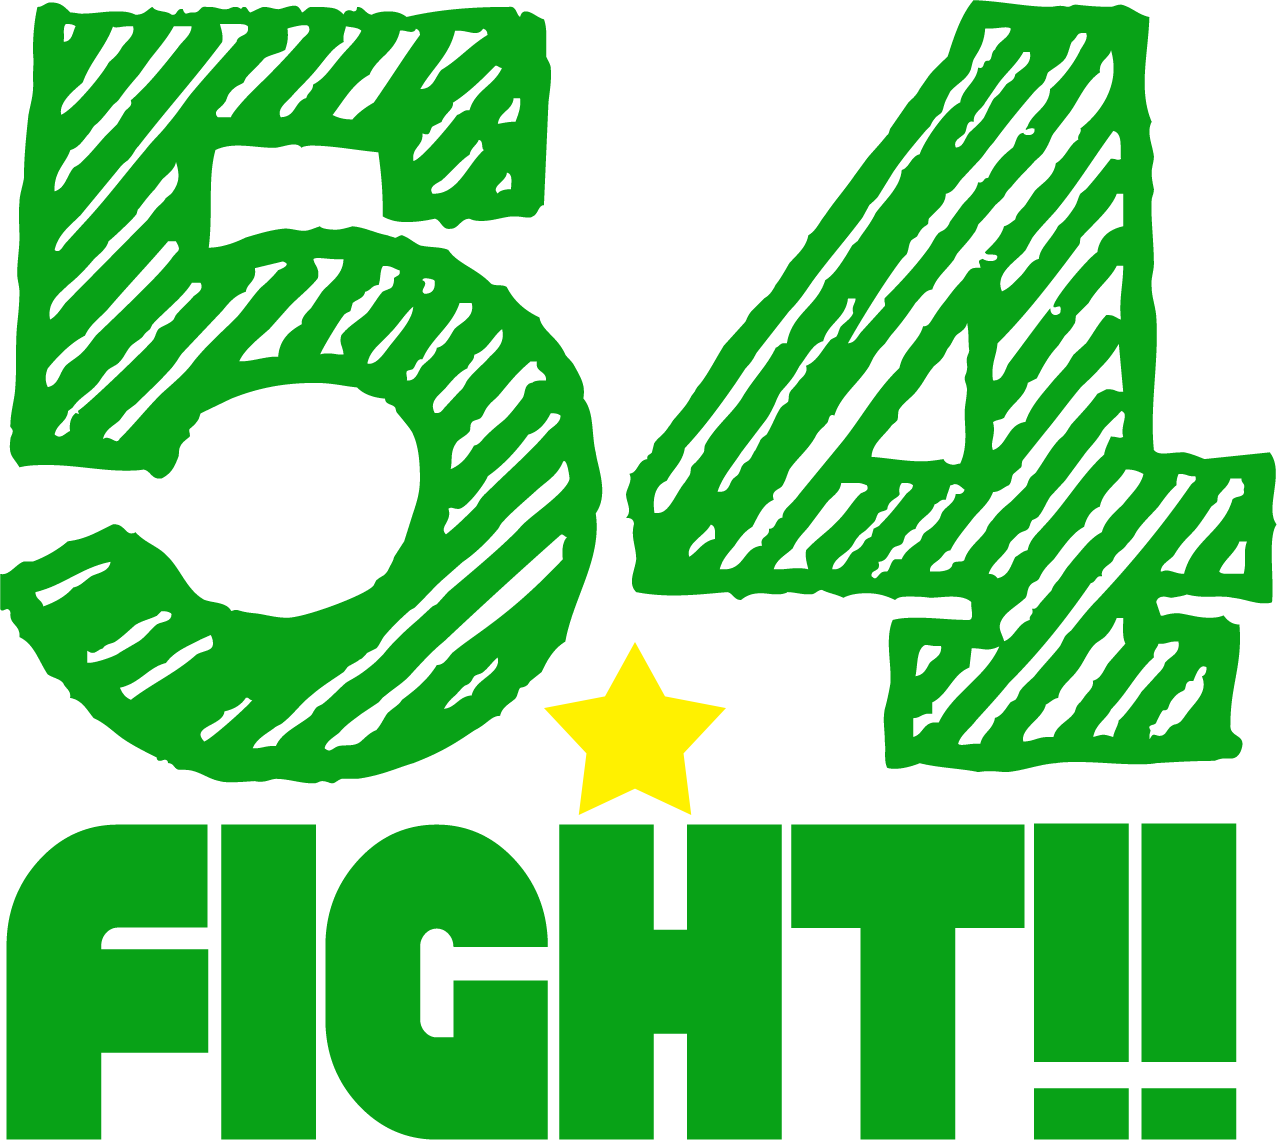 浅井企画主催お笑いライブ 54 Fight 4月 Vol 069 のチケット情報 予約 購入 販売 ライヴポケット